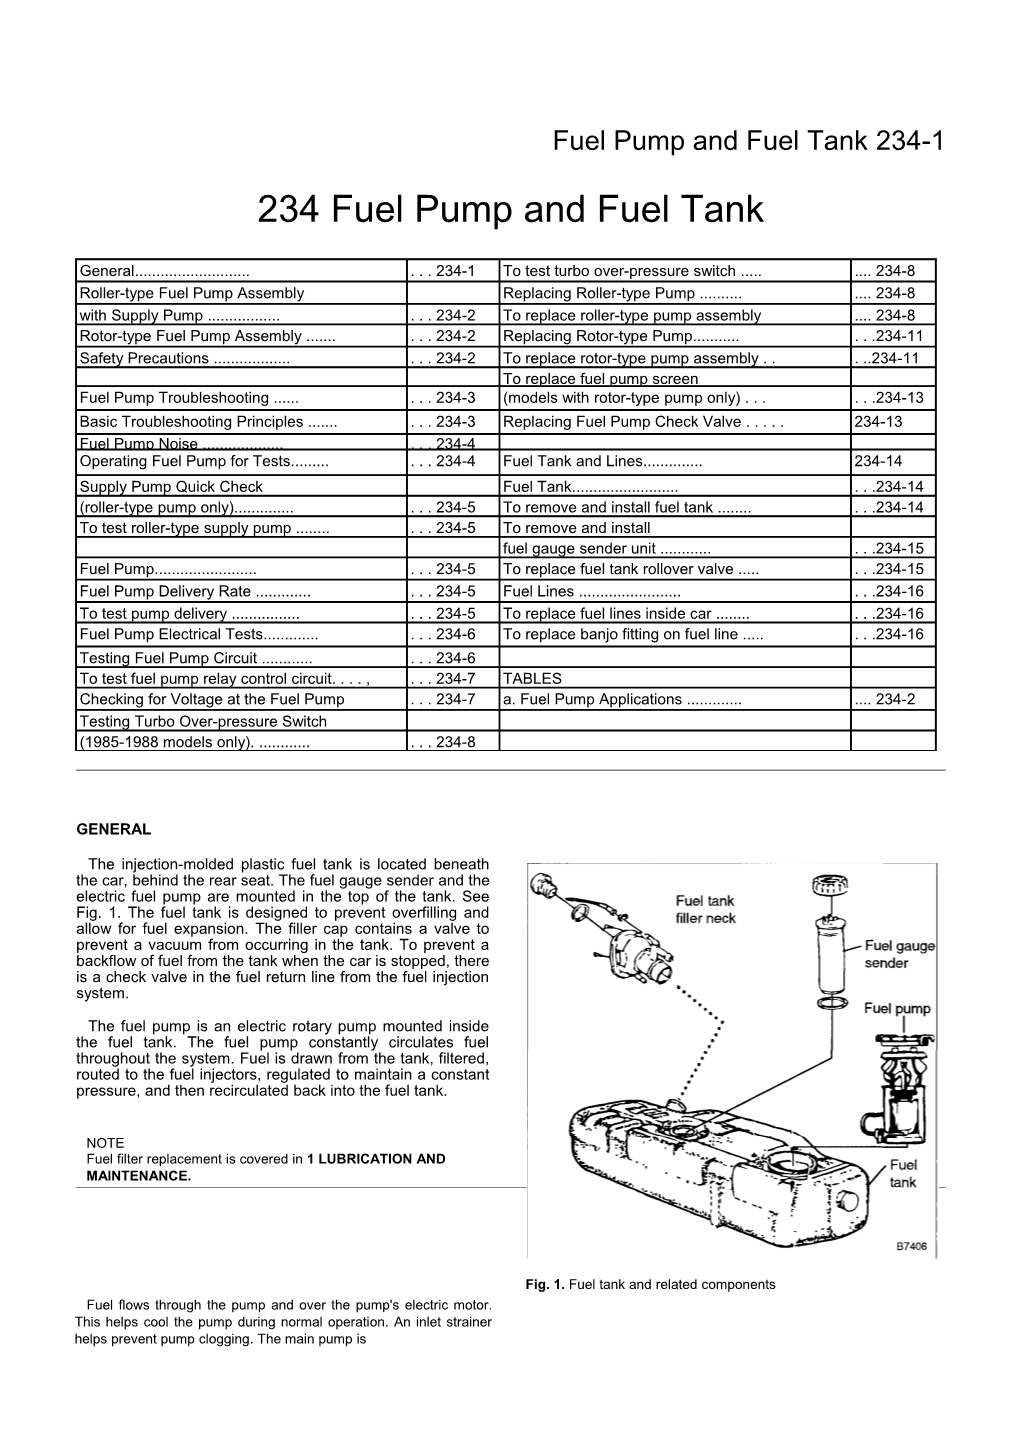 Fuel Pump and Fuel Tank 234-1